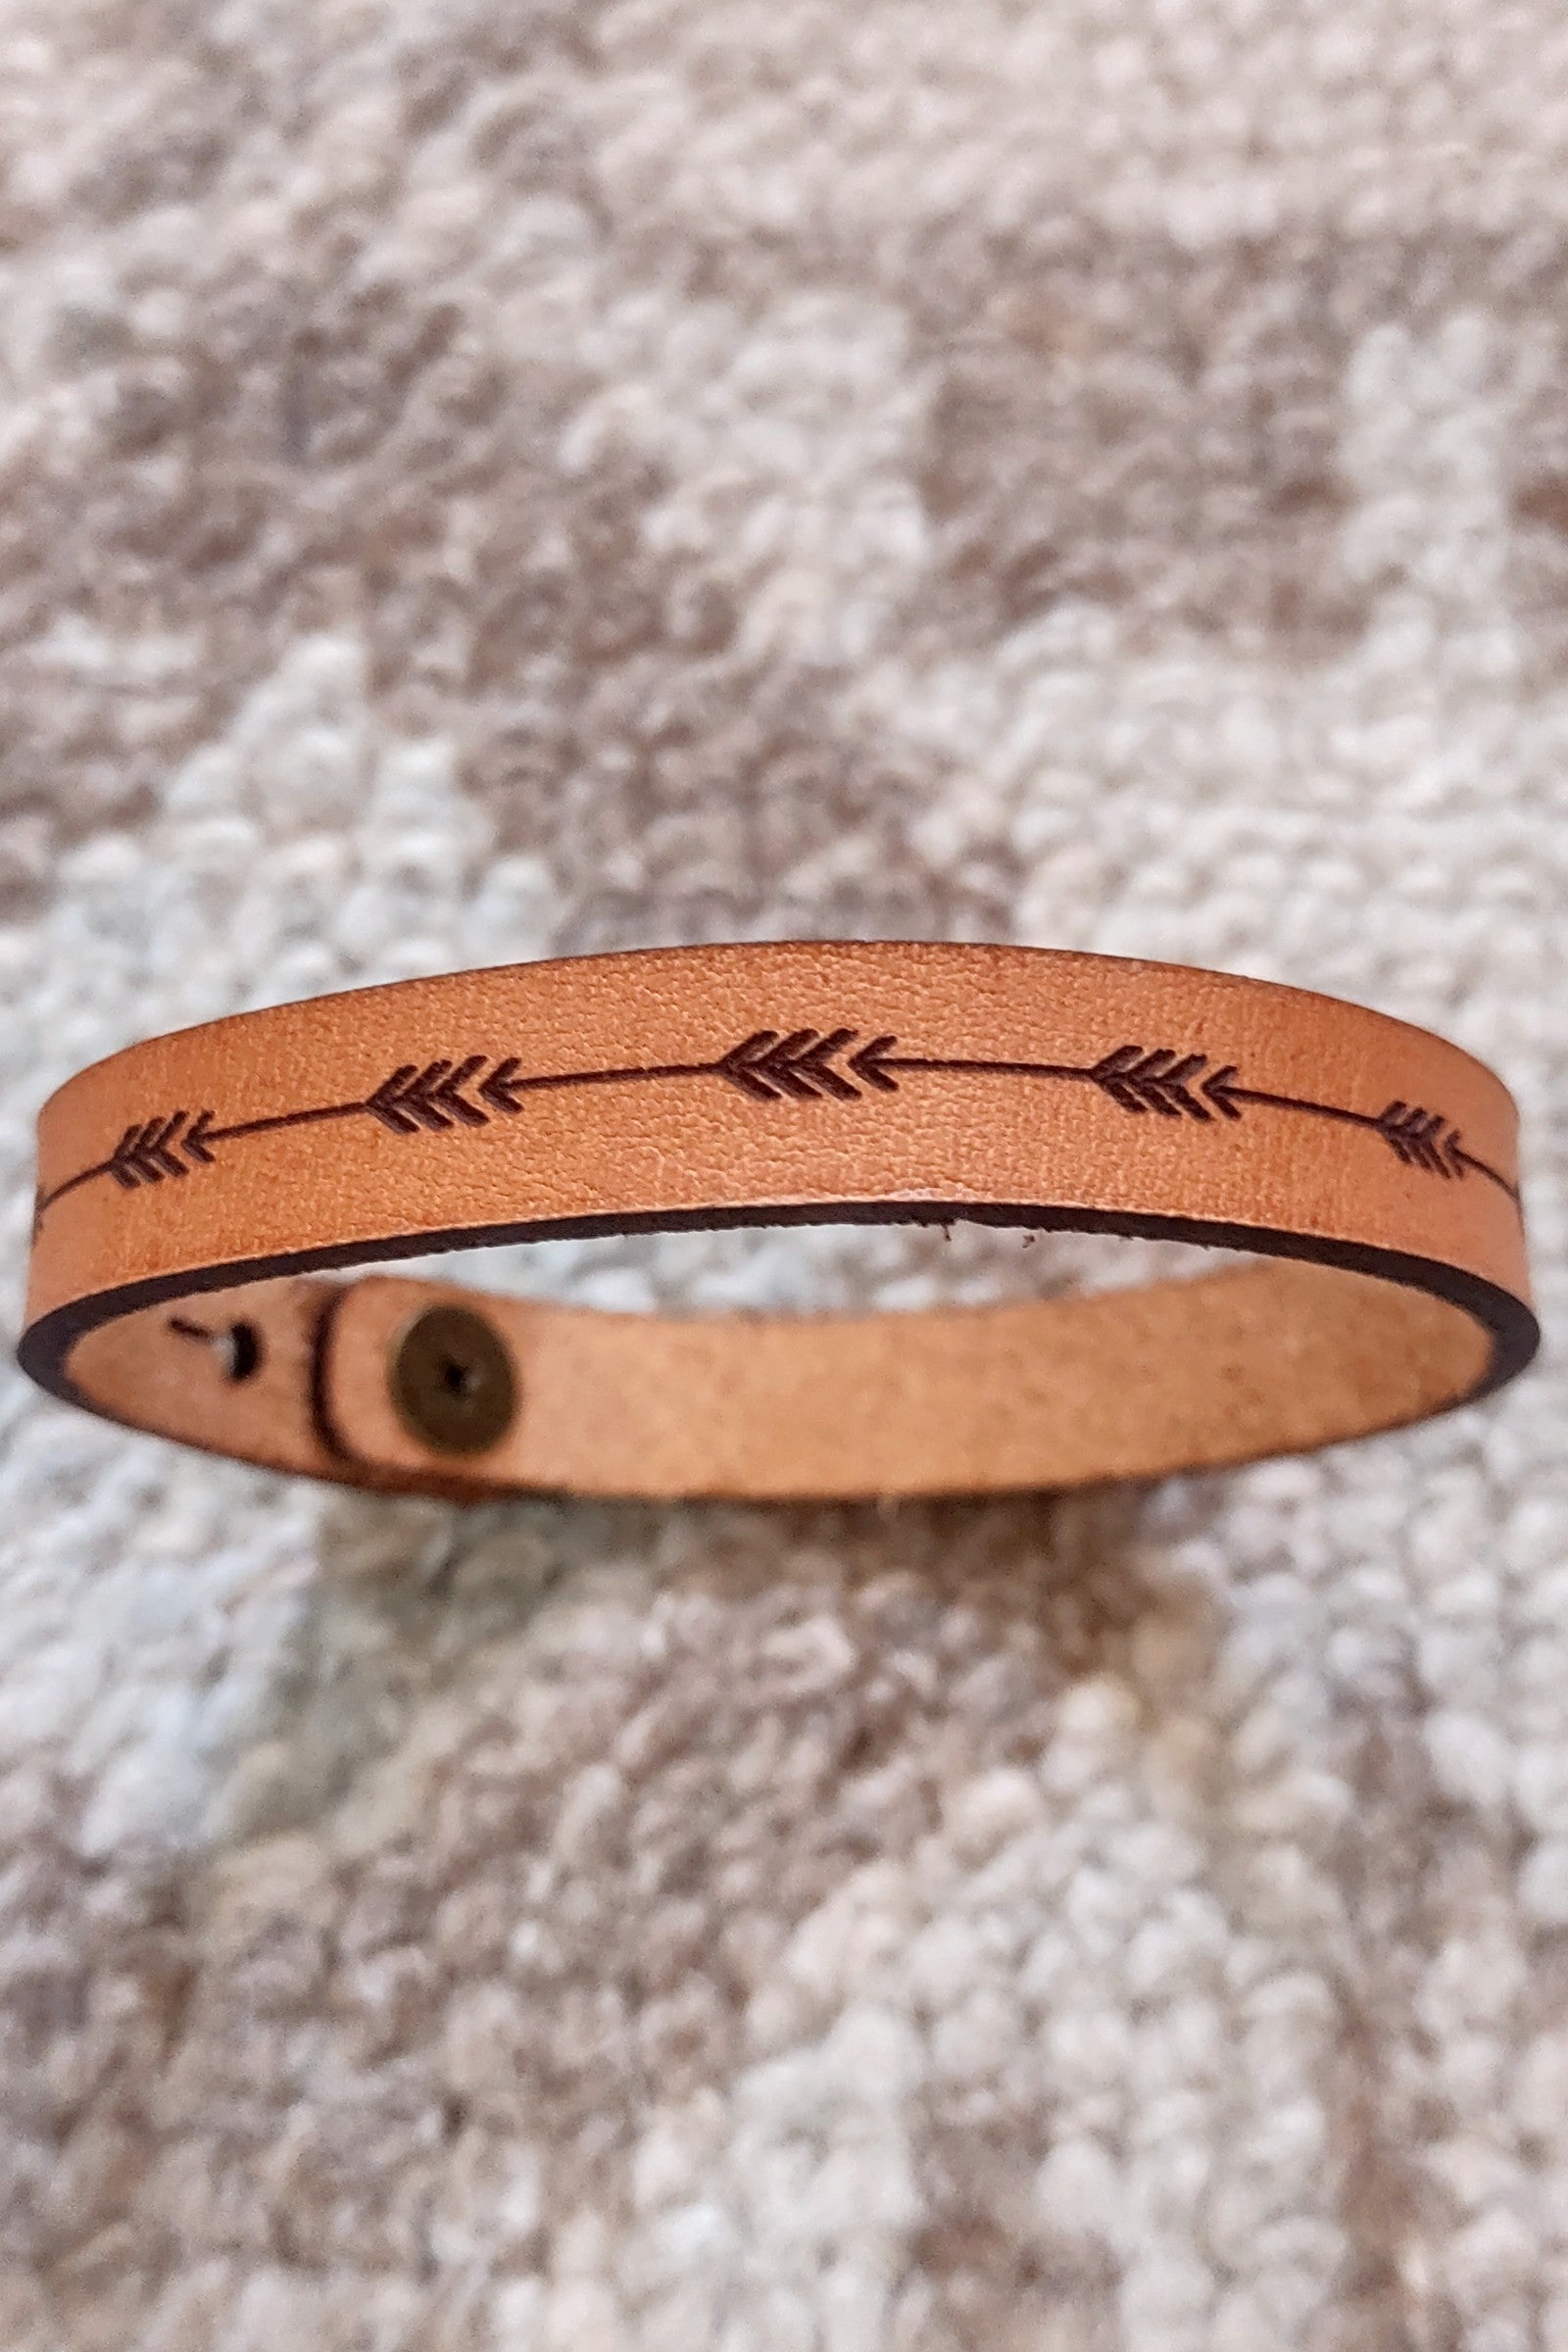 Western Leather Bracelet - 4 Styles